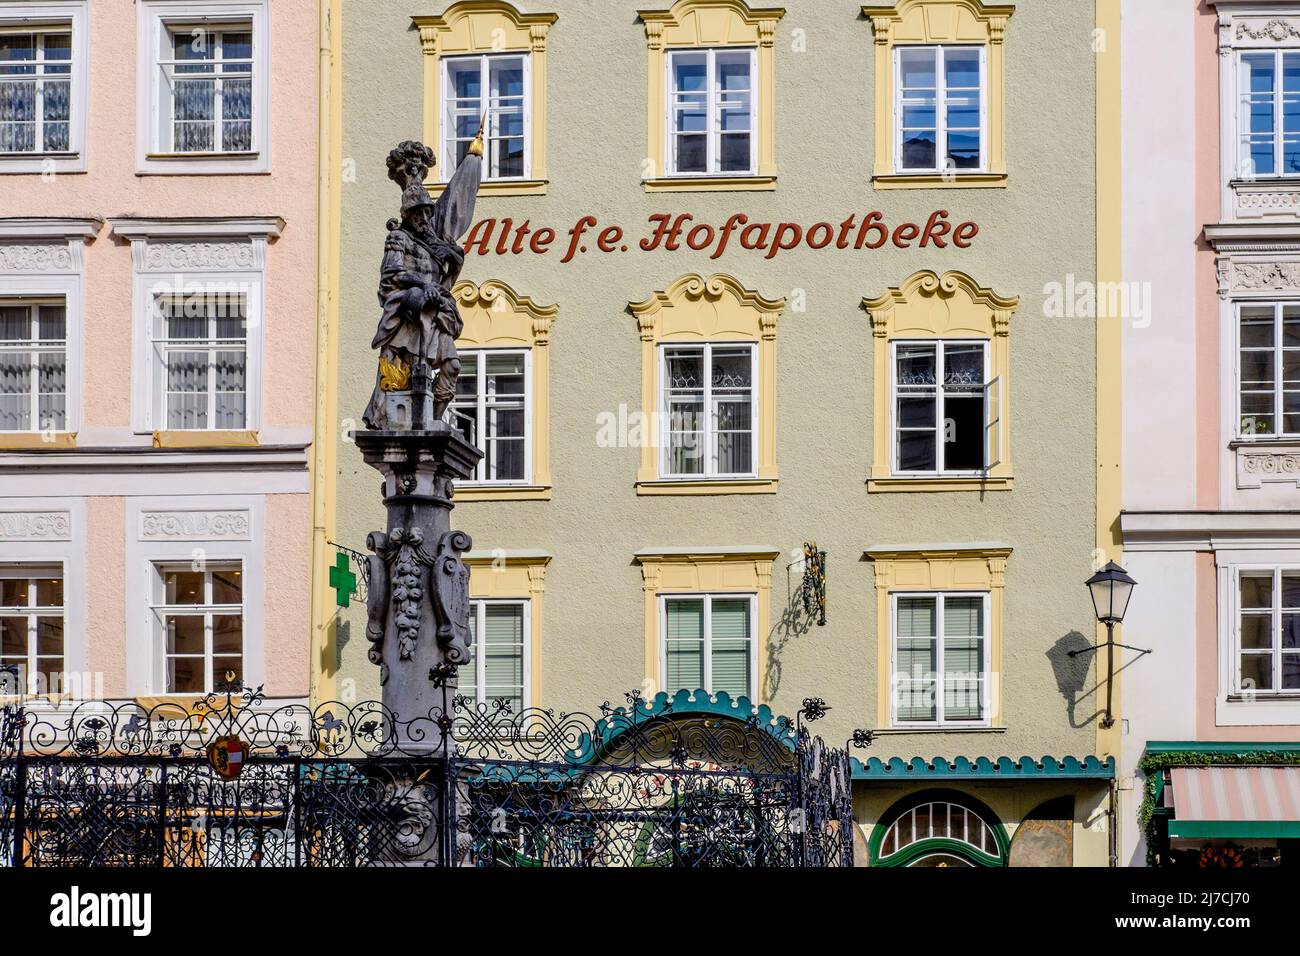 Alte Fürst-Erzbischöfliche Hofapotheke, Alter Markt, Salzburg, Austria. Stock Photo